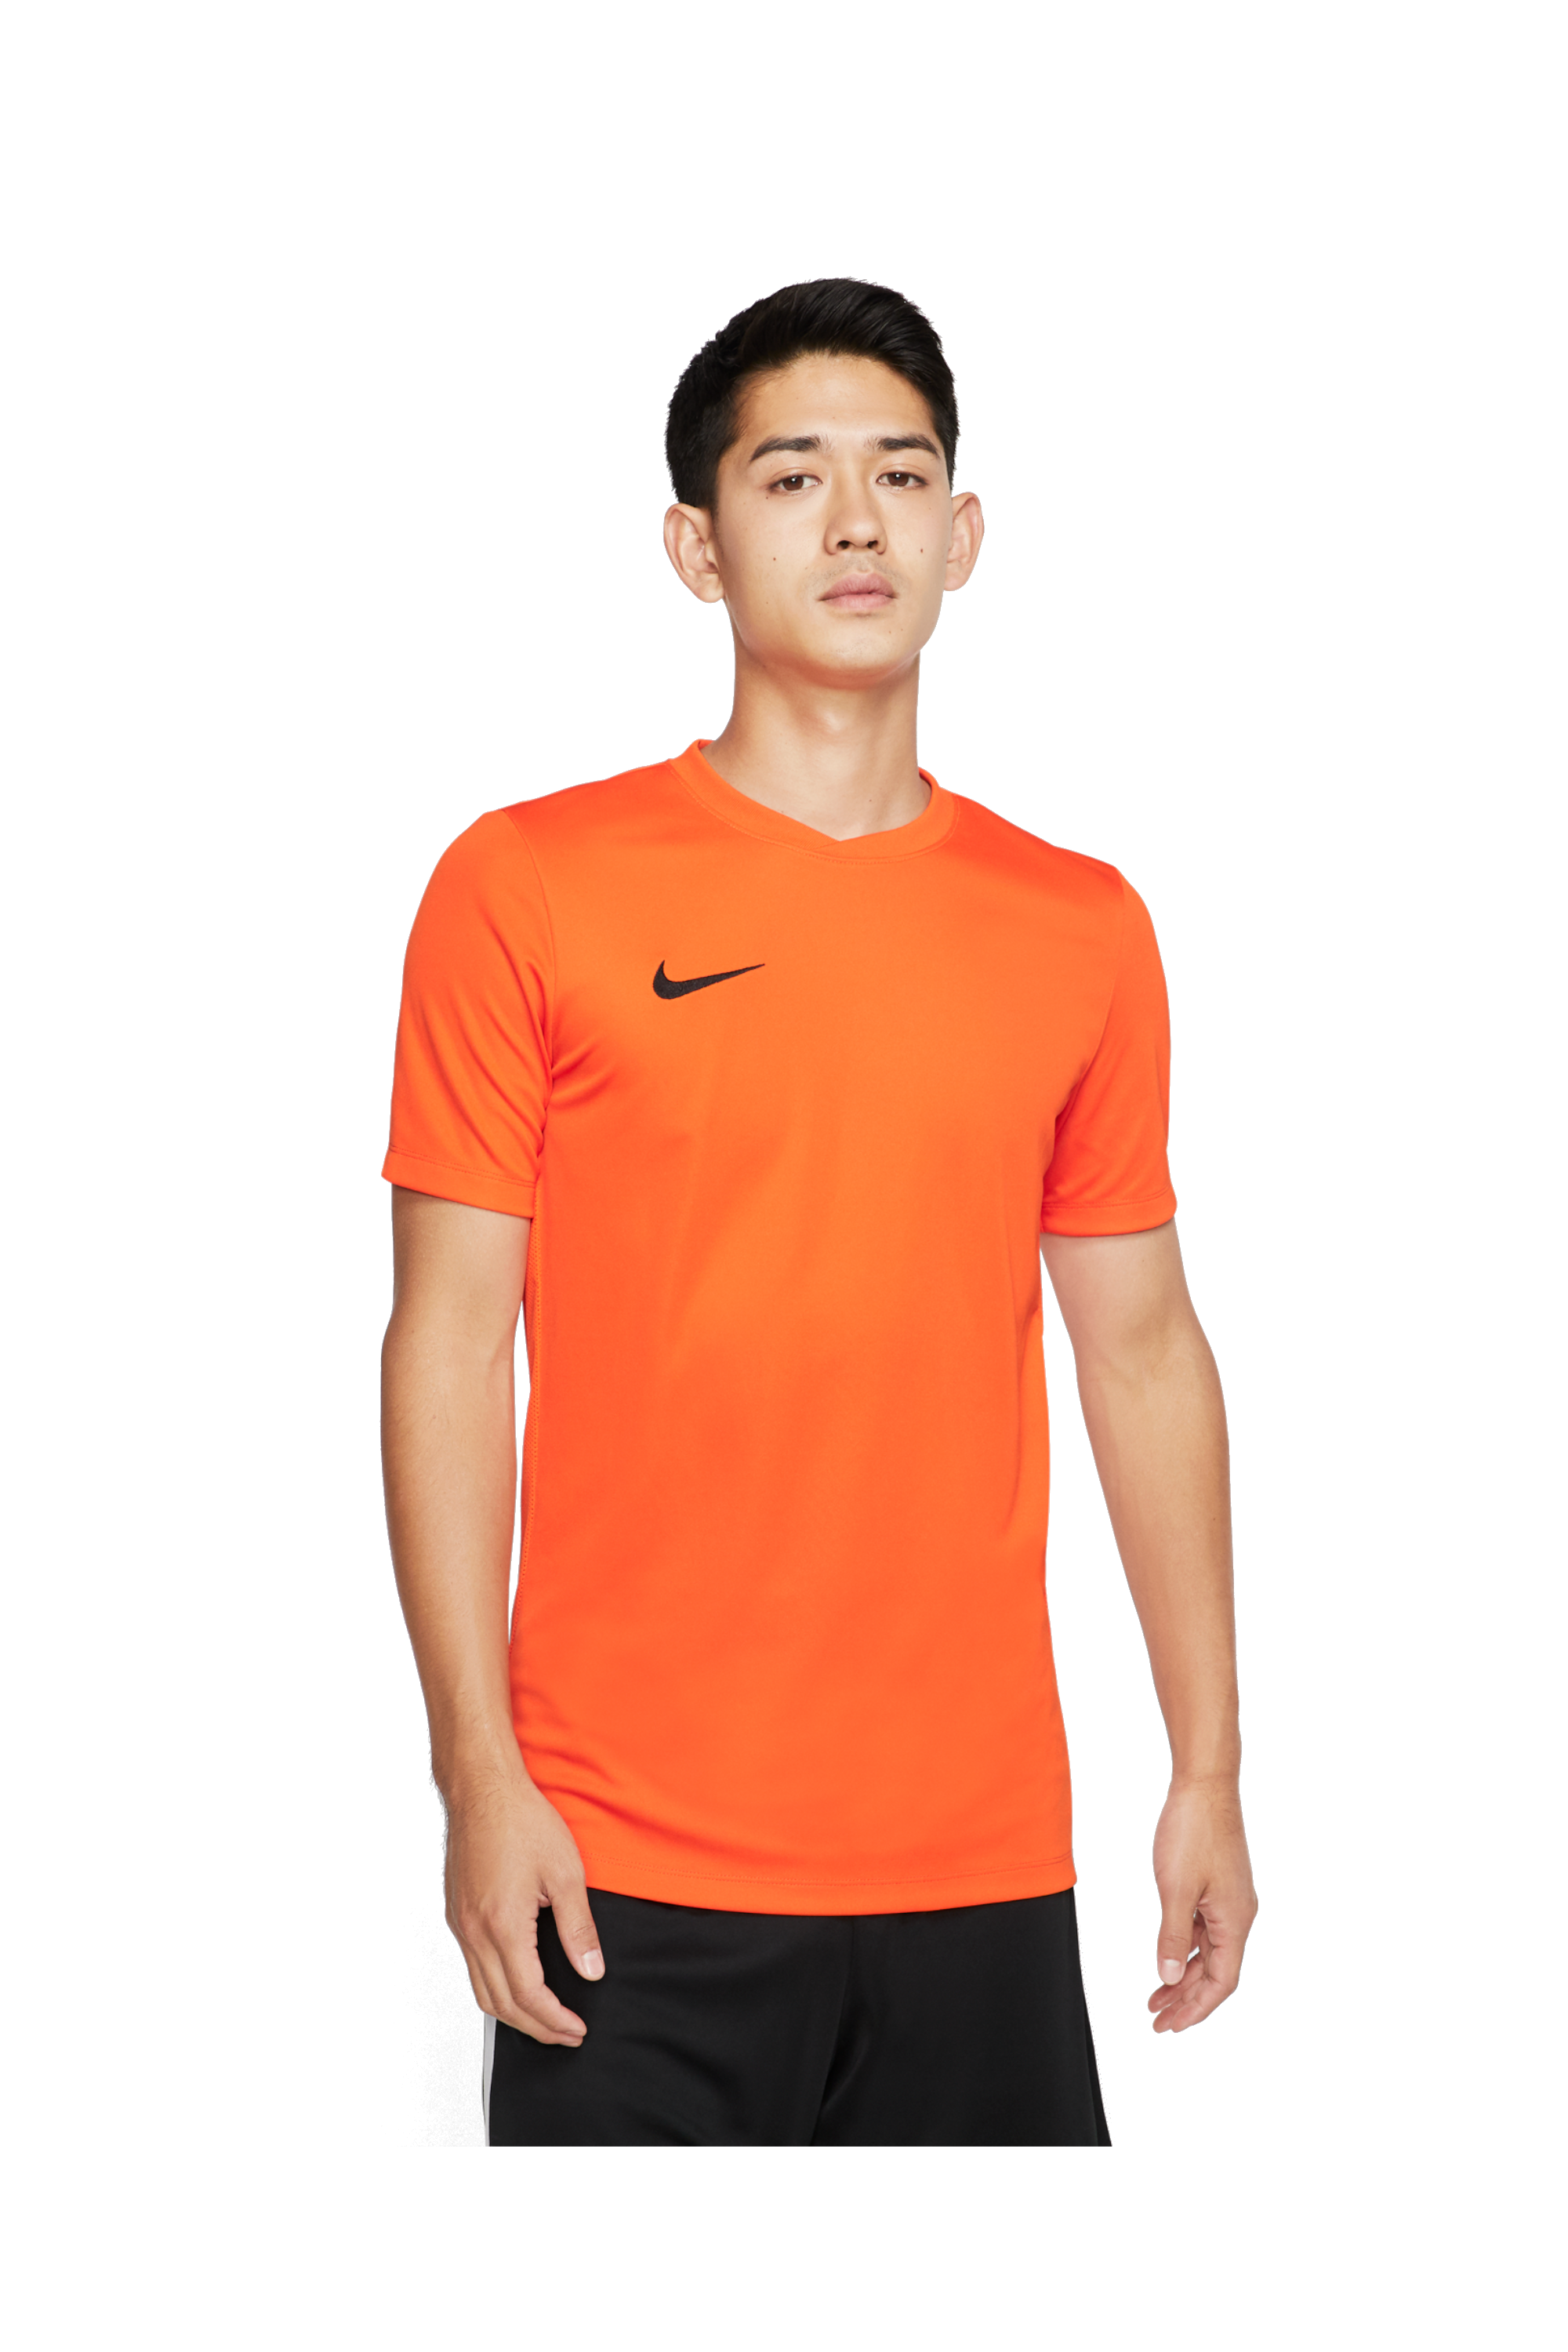 Football Shirt Nike Park VI | R-GOL.com 